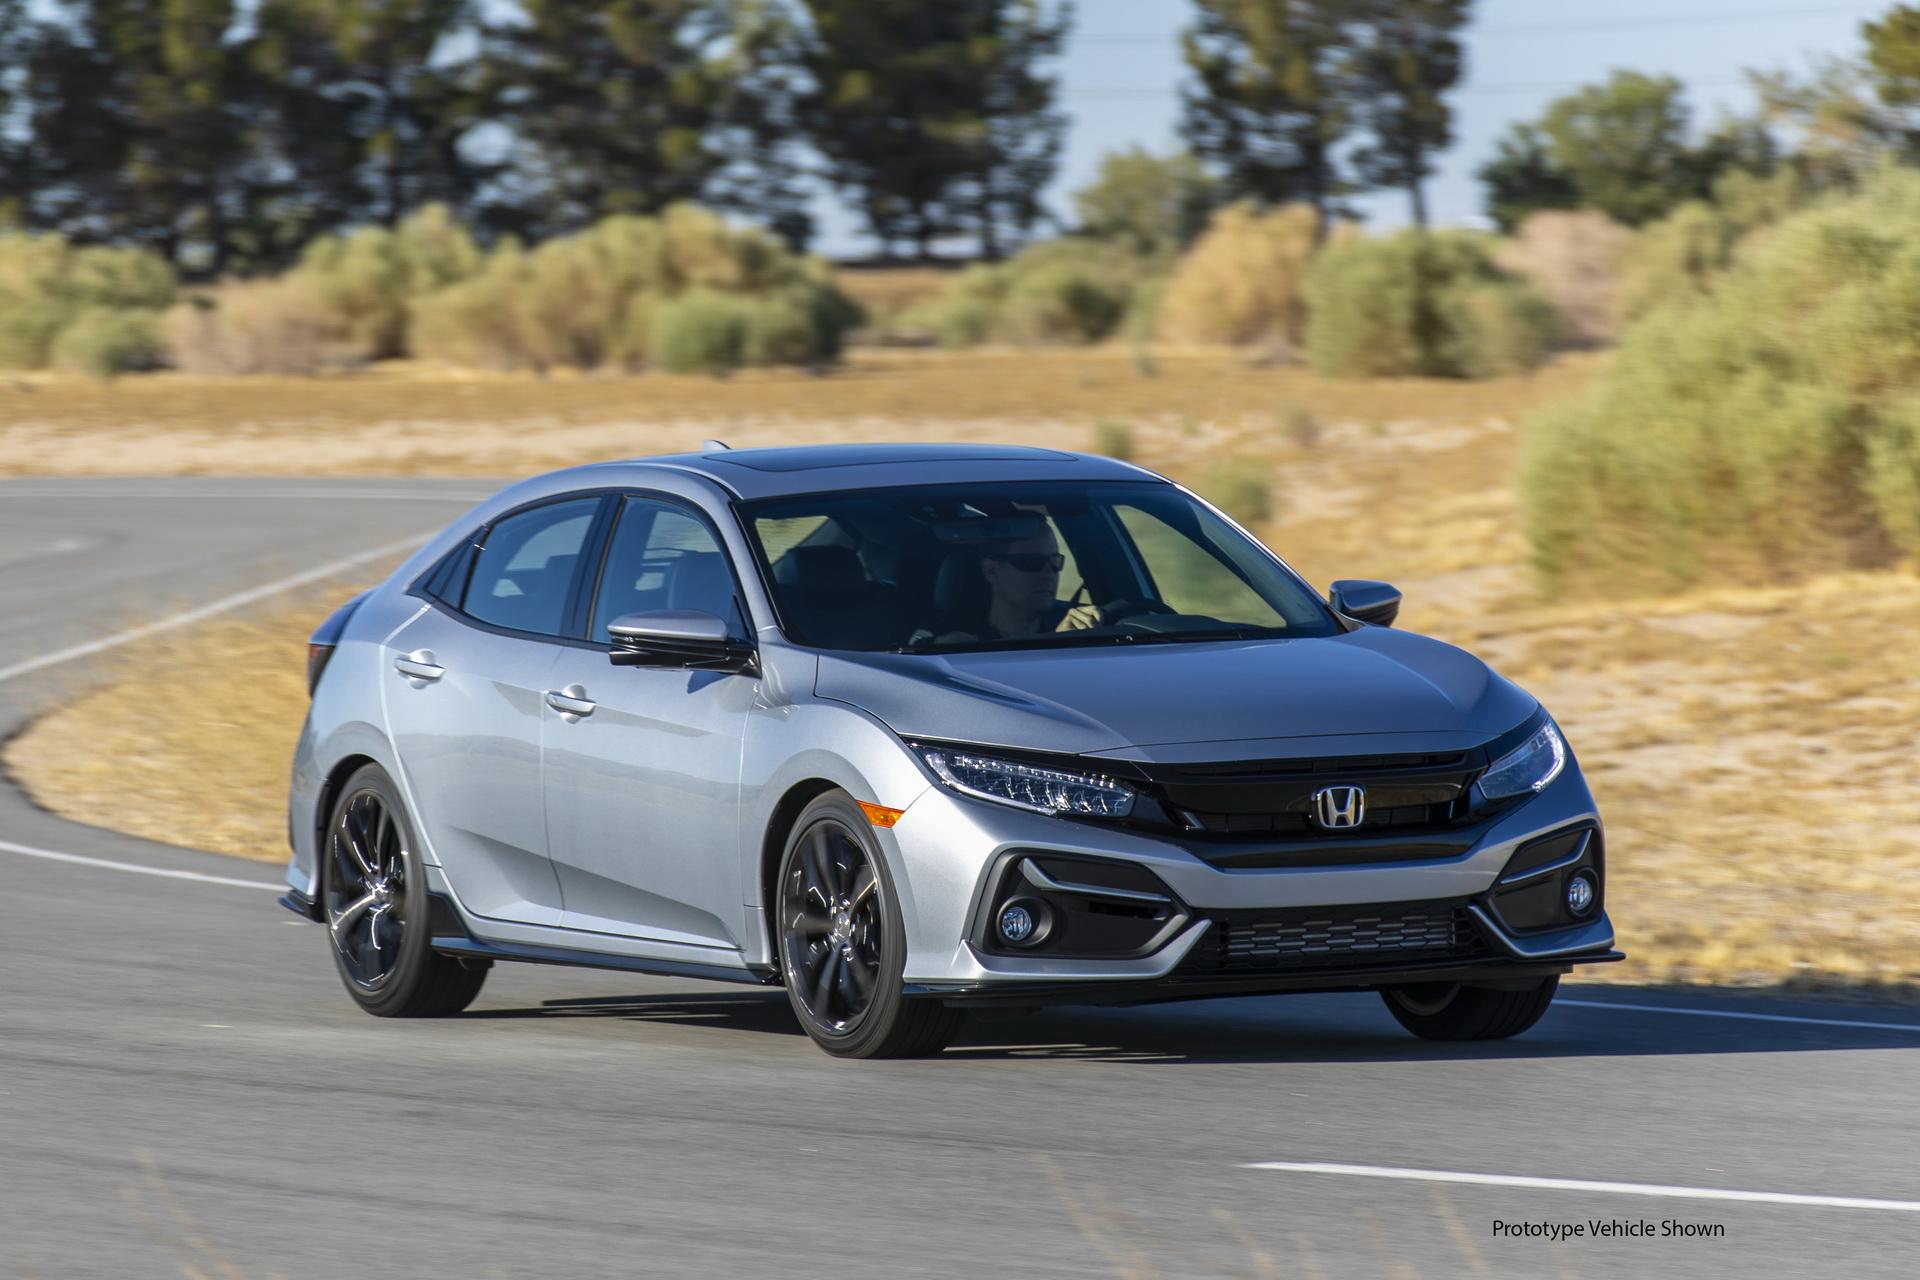 Honda Civic Hatchback 2020 ปรับโฉมดีไซน์ใหม่ เคาะราคาที่อเมริกาเริ่มต้นที่เกือบเจ็ดแสน